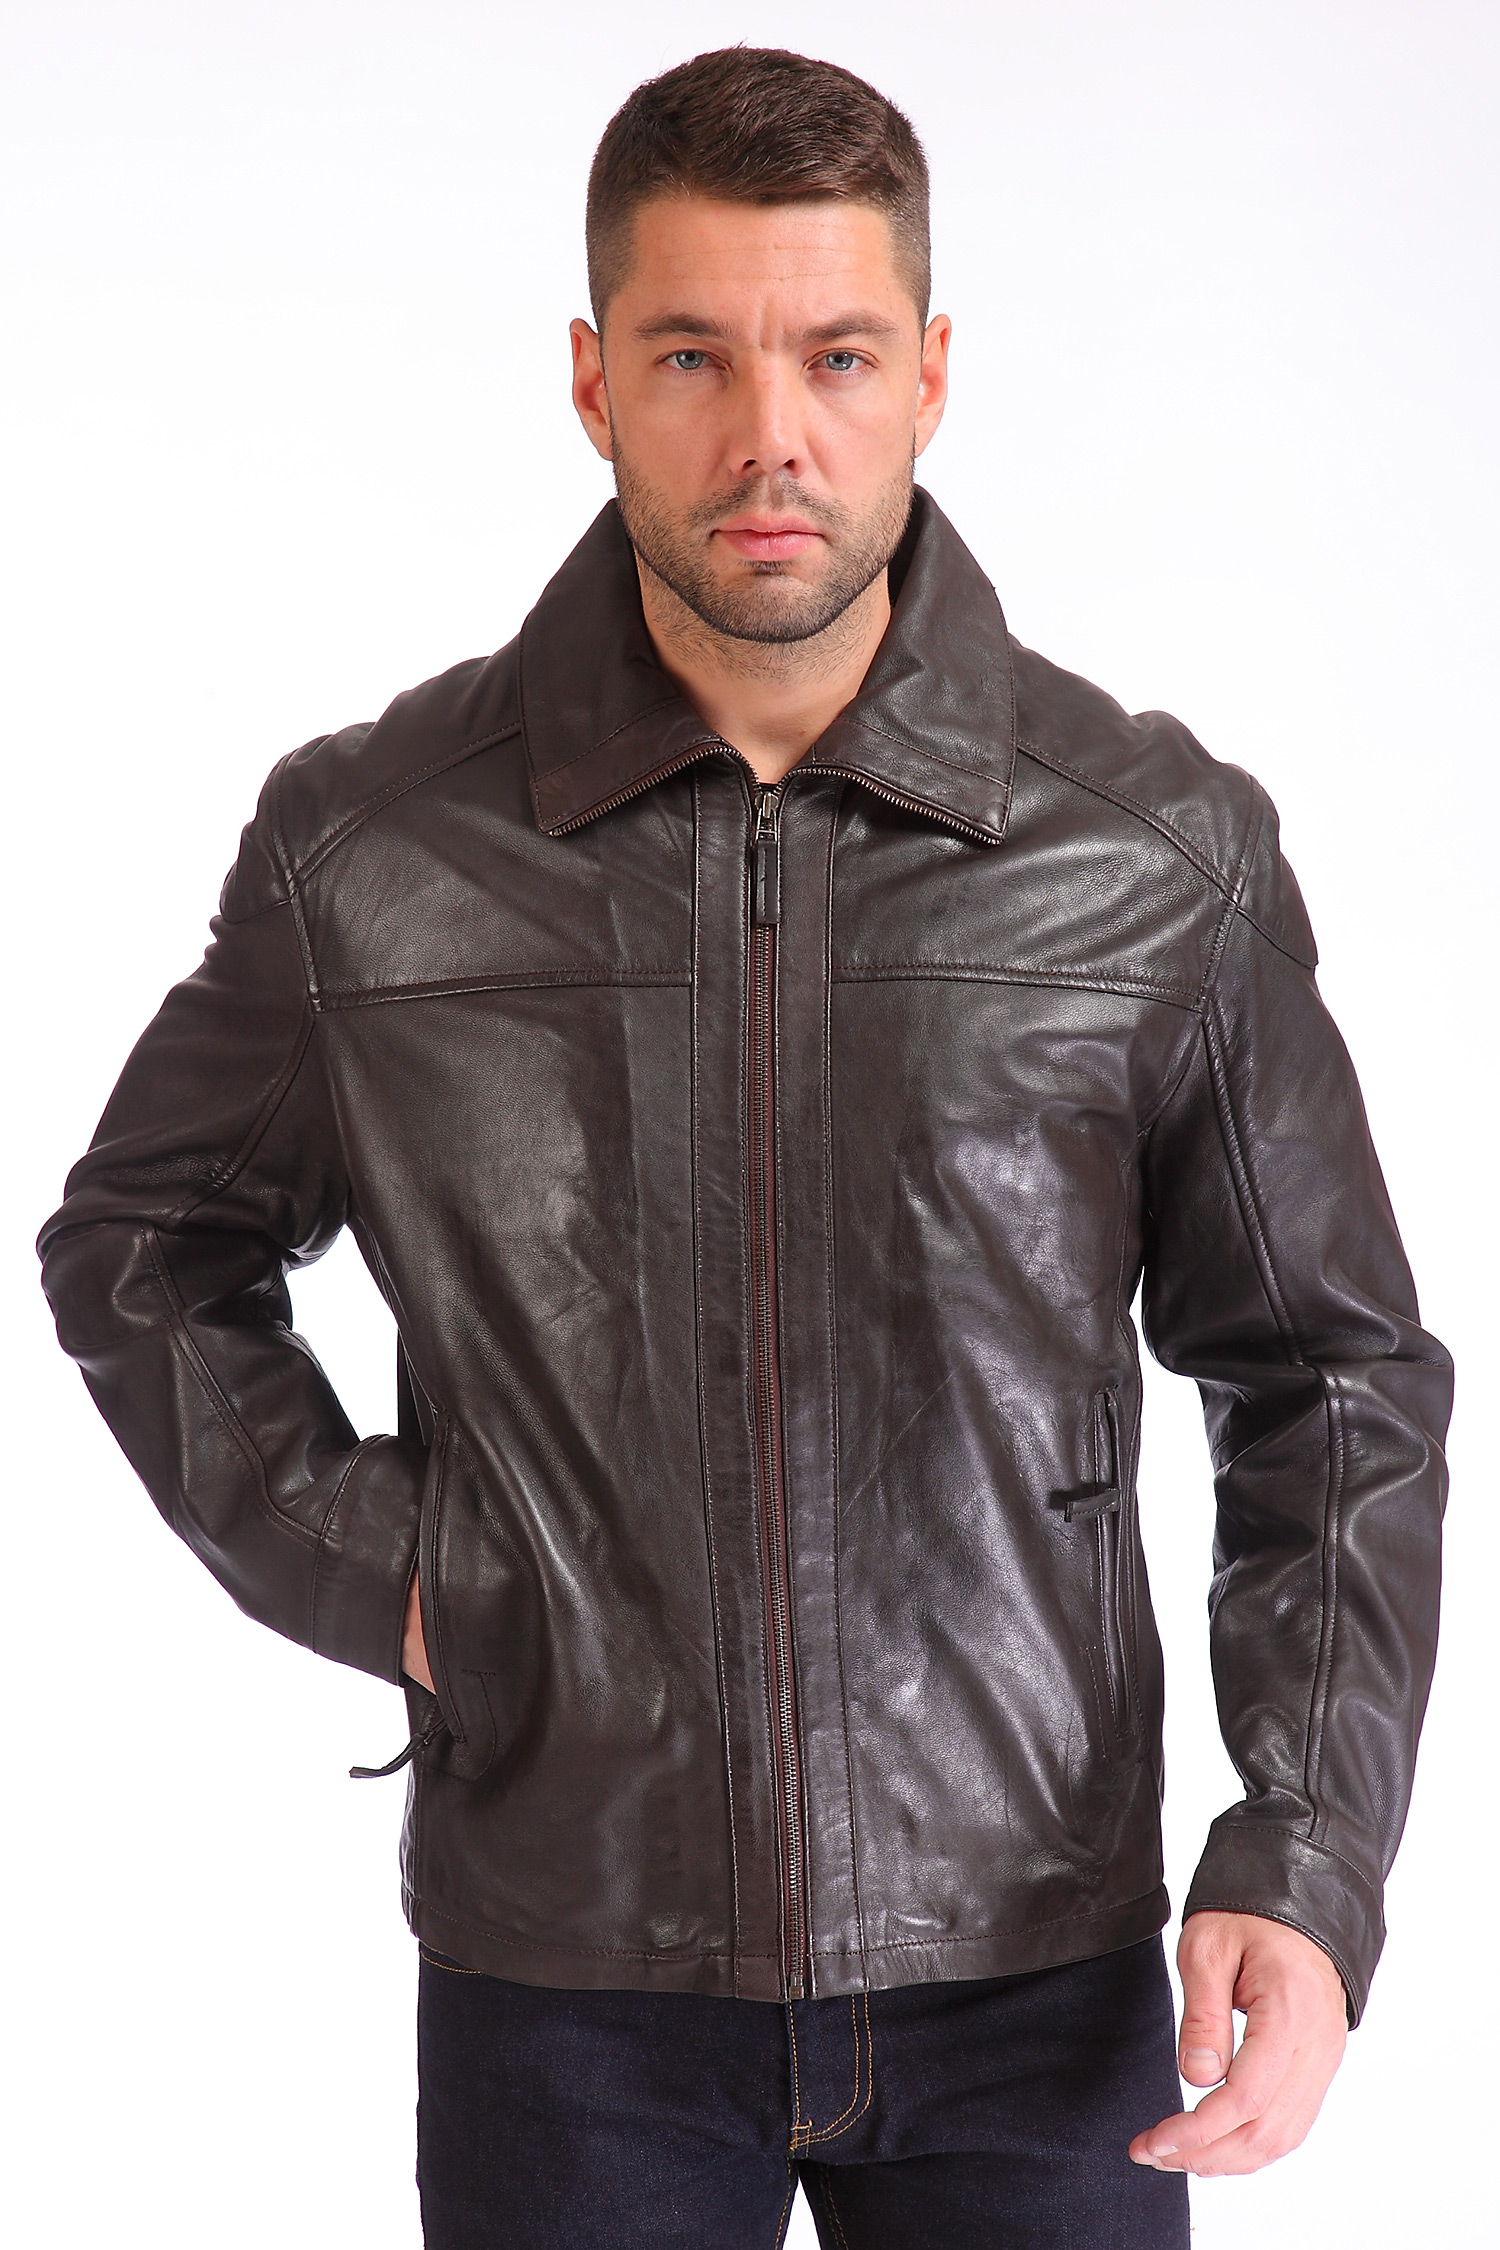 Купить кожаную куртку 54 размера. Куртка мужская кожаная бренд Reportage. Куртка мужская натуральная кожа Джумба Эмилио Руссо. Эмилио Руссо кожаные куртки мужские. Adrecom куртки кожаные.